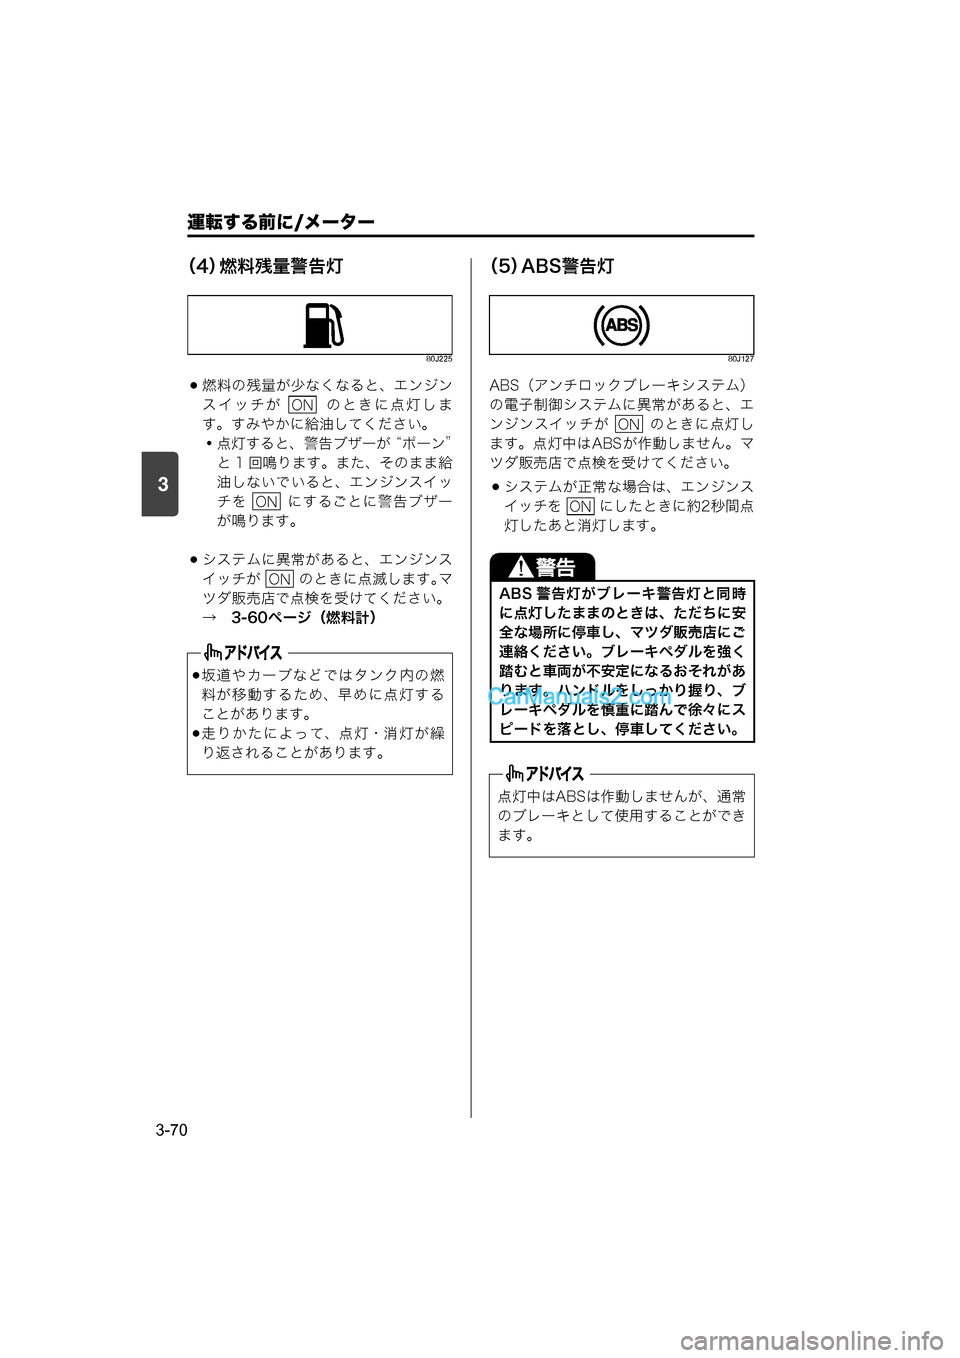 MAZDA MODEL CARROL 2015  取扱説明書 (キャロル) (in Japanese) 運転する前に/メーター
3-70
3
（4）燃料残量警告灯
80J225
燃料の残量が少なくなると、エンジン
スイッチが    のときに点灯しま
す。すみやかに給�